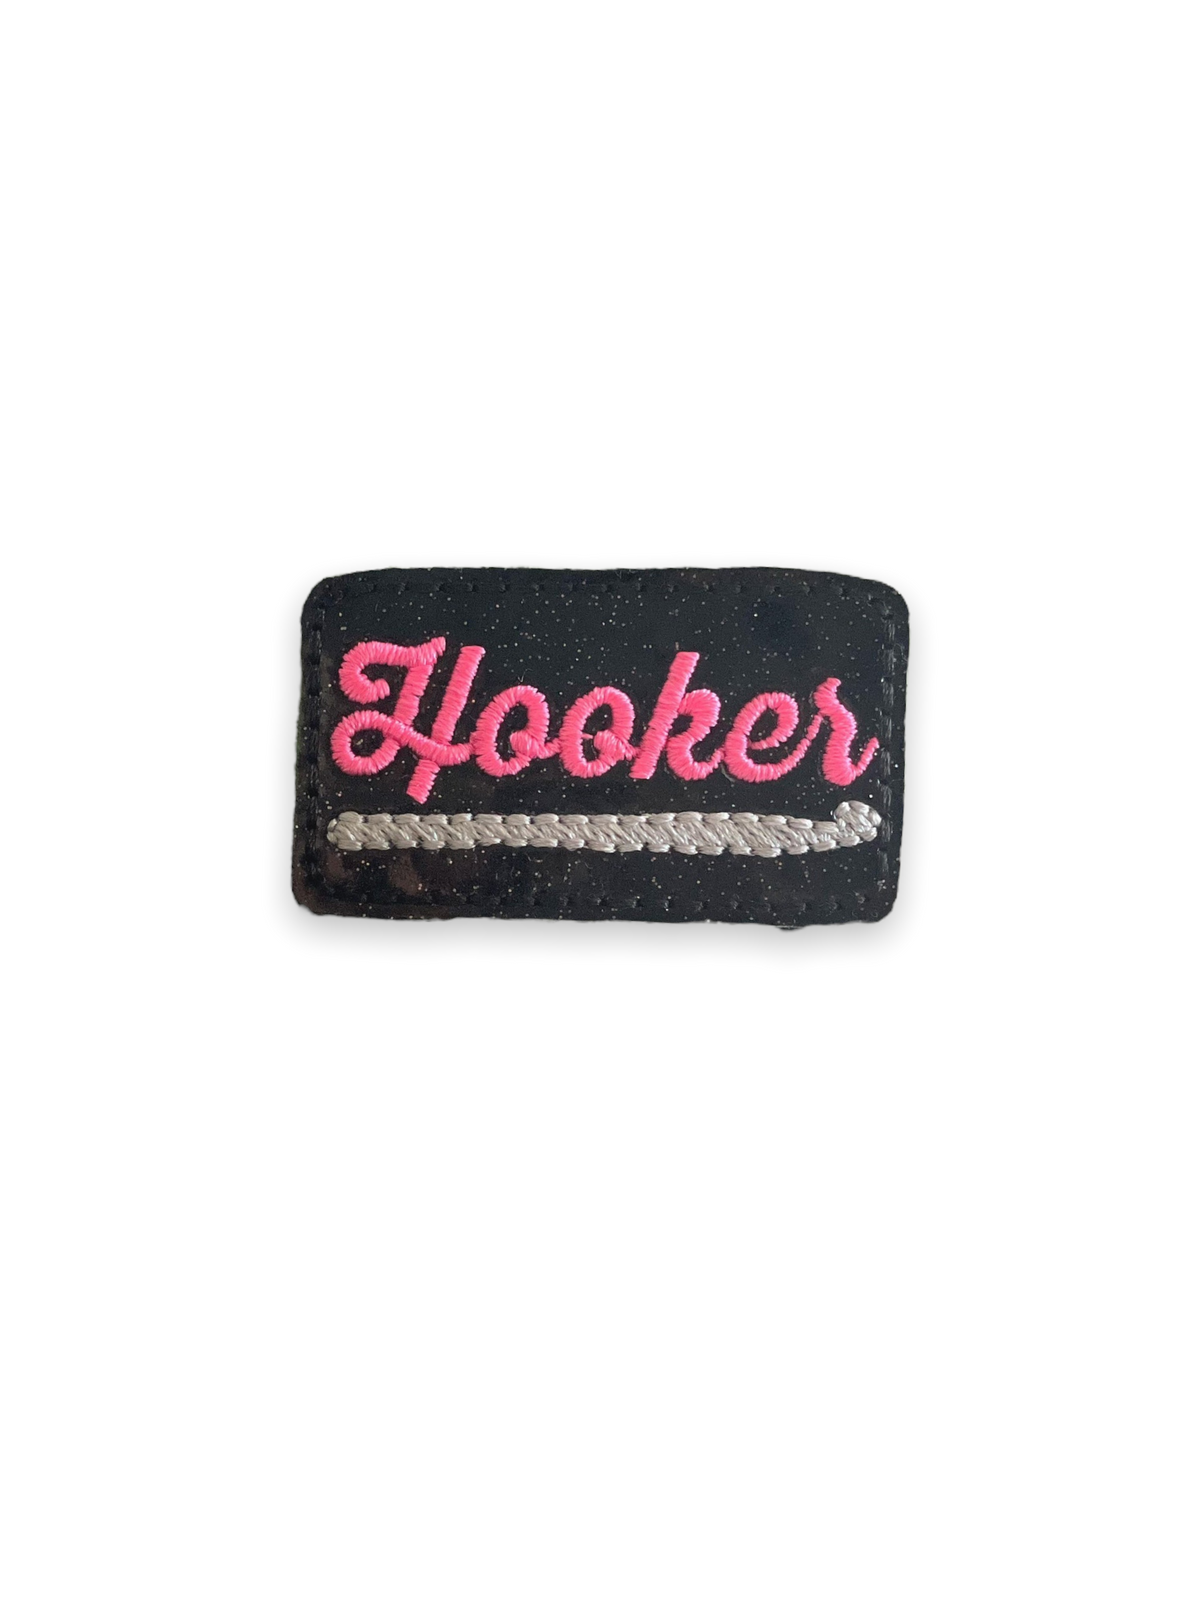 Crochet Hooker  Badge Reel + Topper